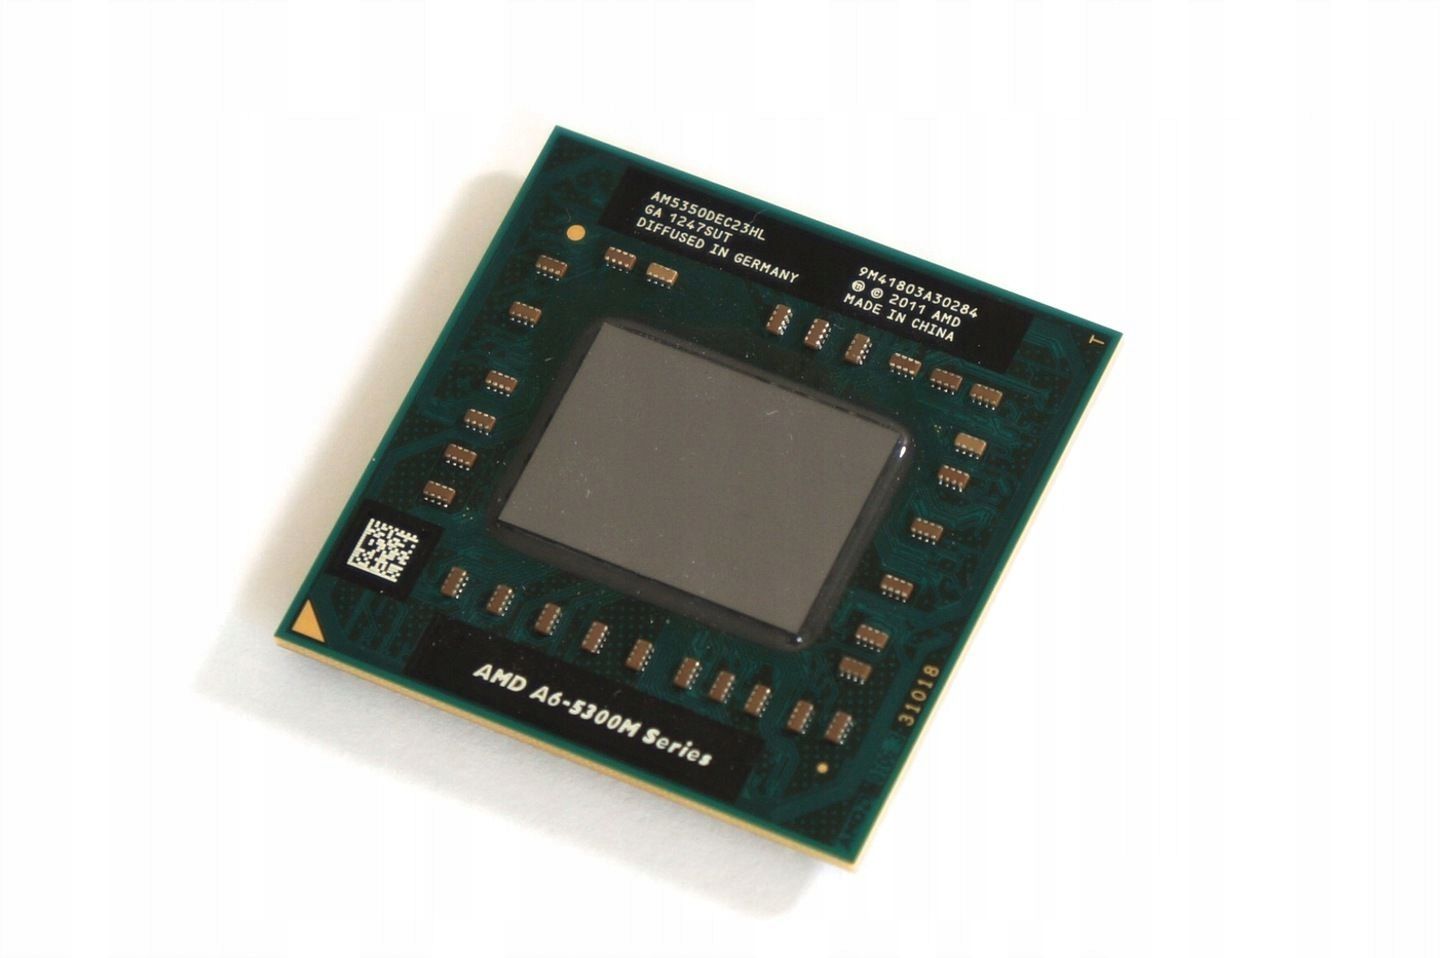 AMDПроцессордляноутбукаA65350M(2,9Ghz,FS1,1Mb,2C/2T,GPU)OEM(безкулера)